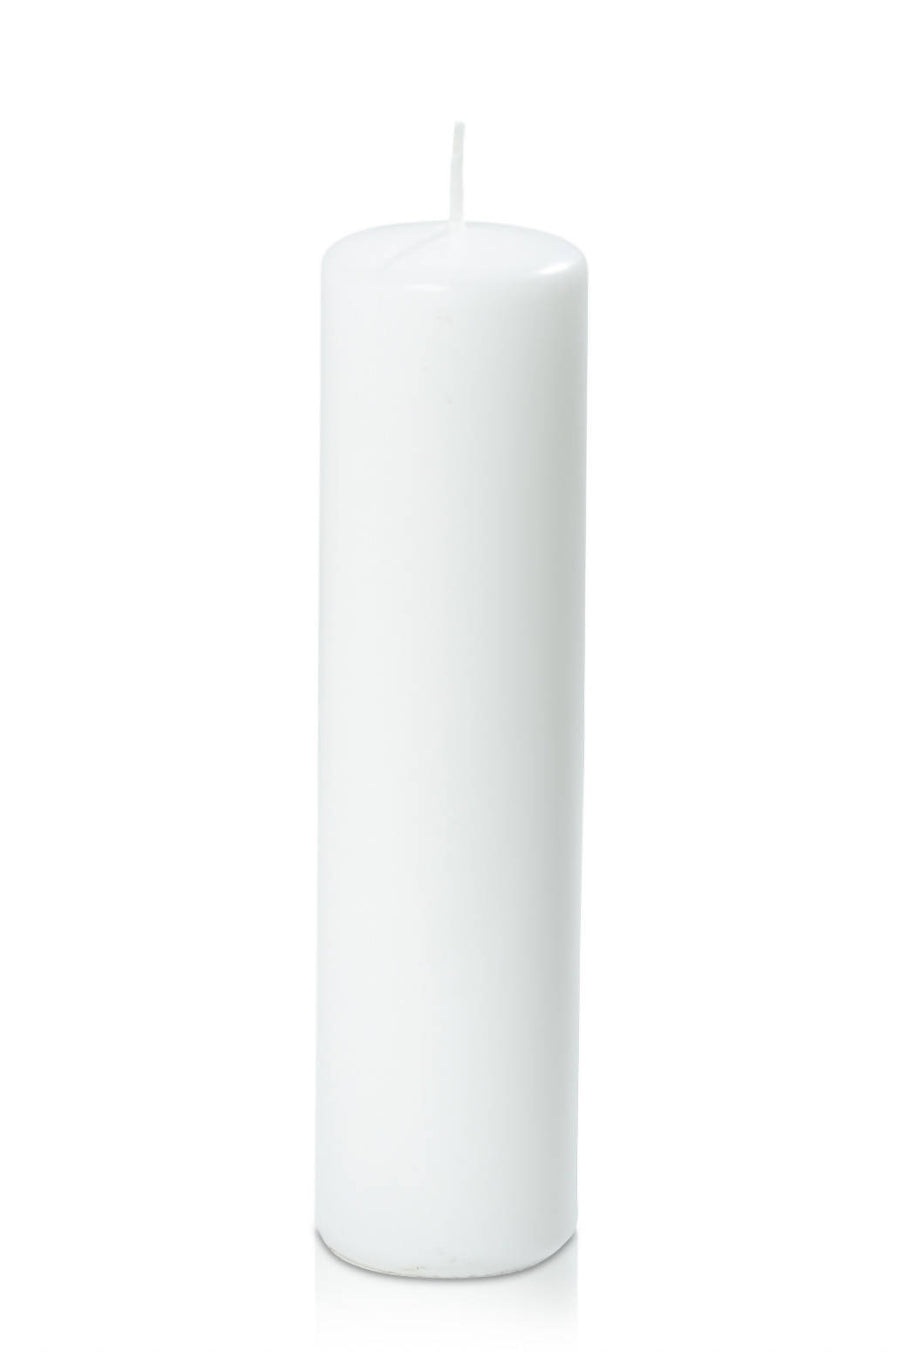 White 5cm x 20cm Slim Event Pillar